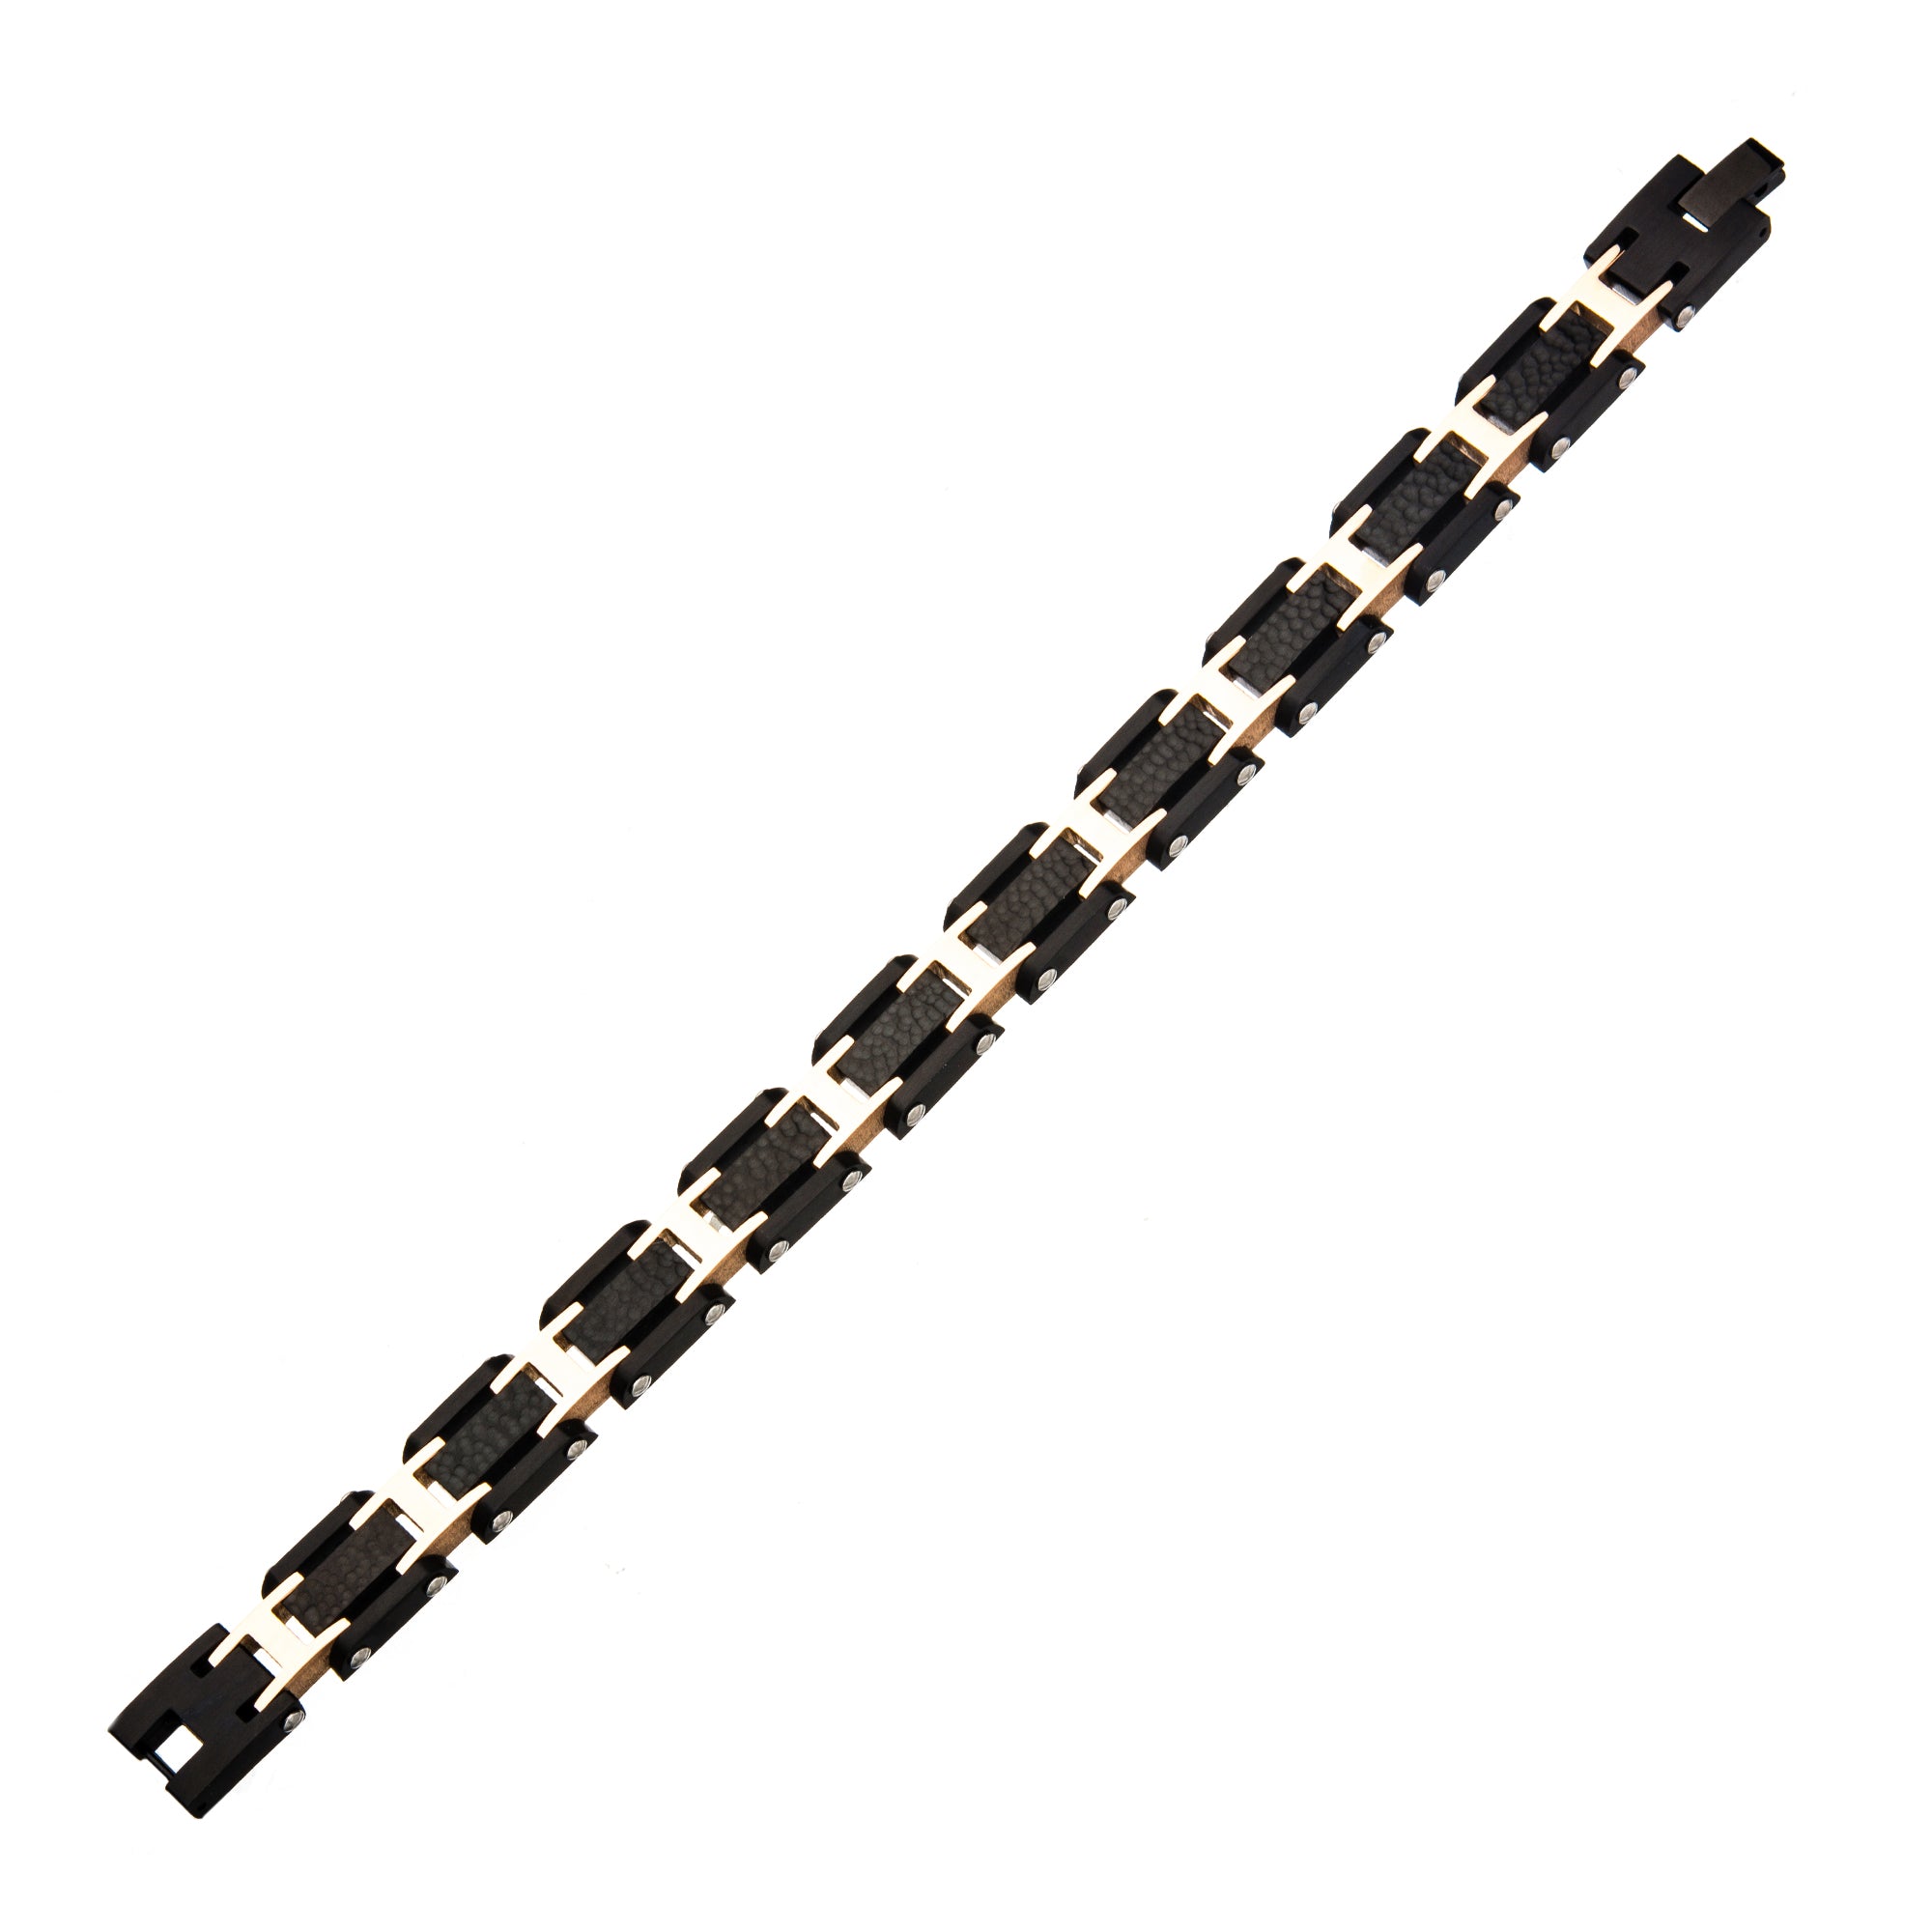 Black Pebble Design with Rose Gold Plated Link Bracelet